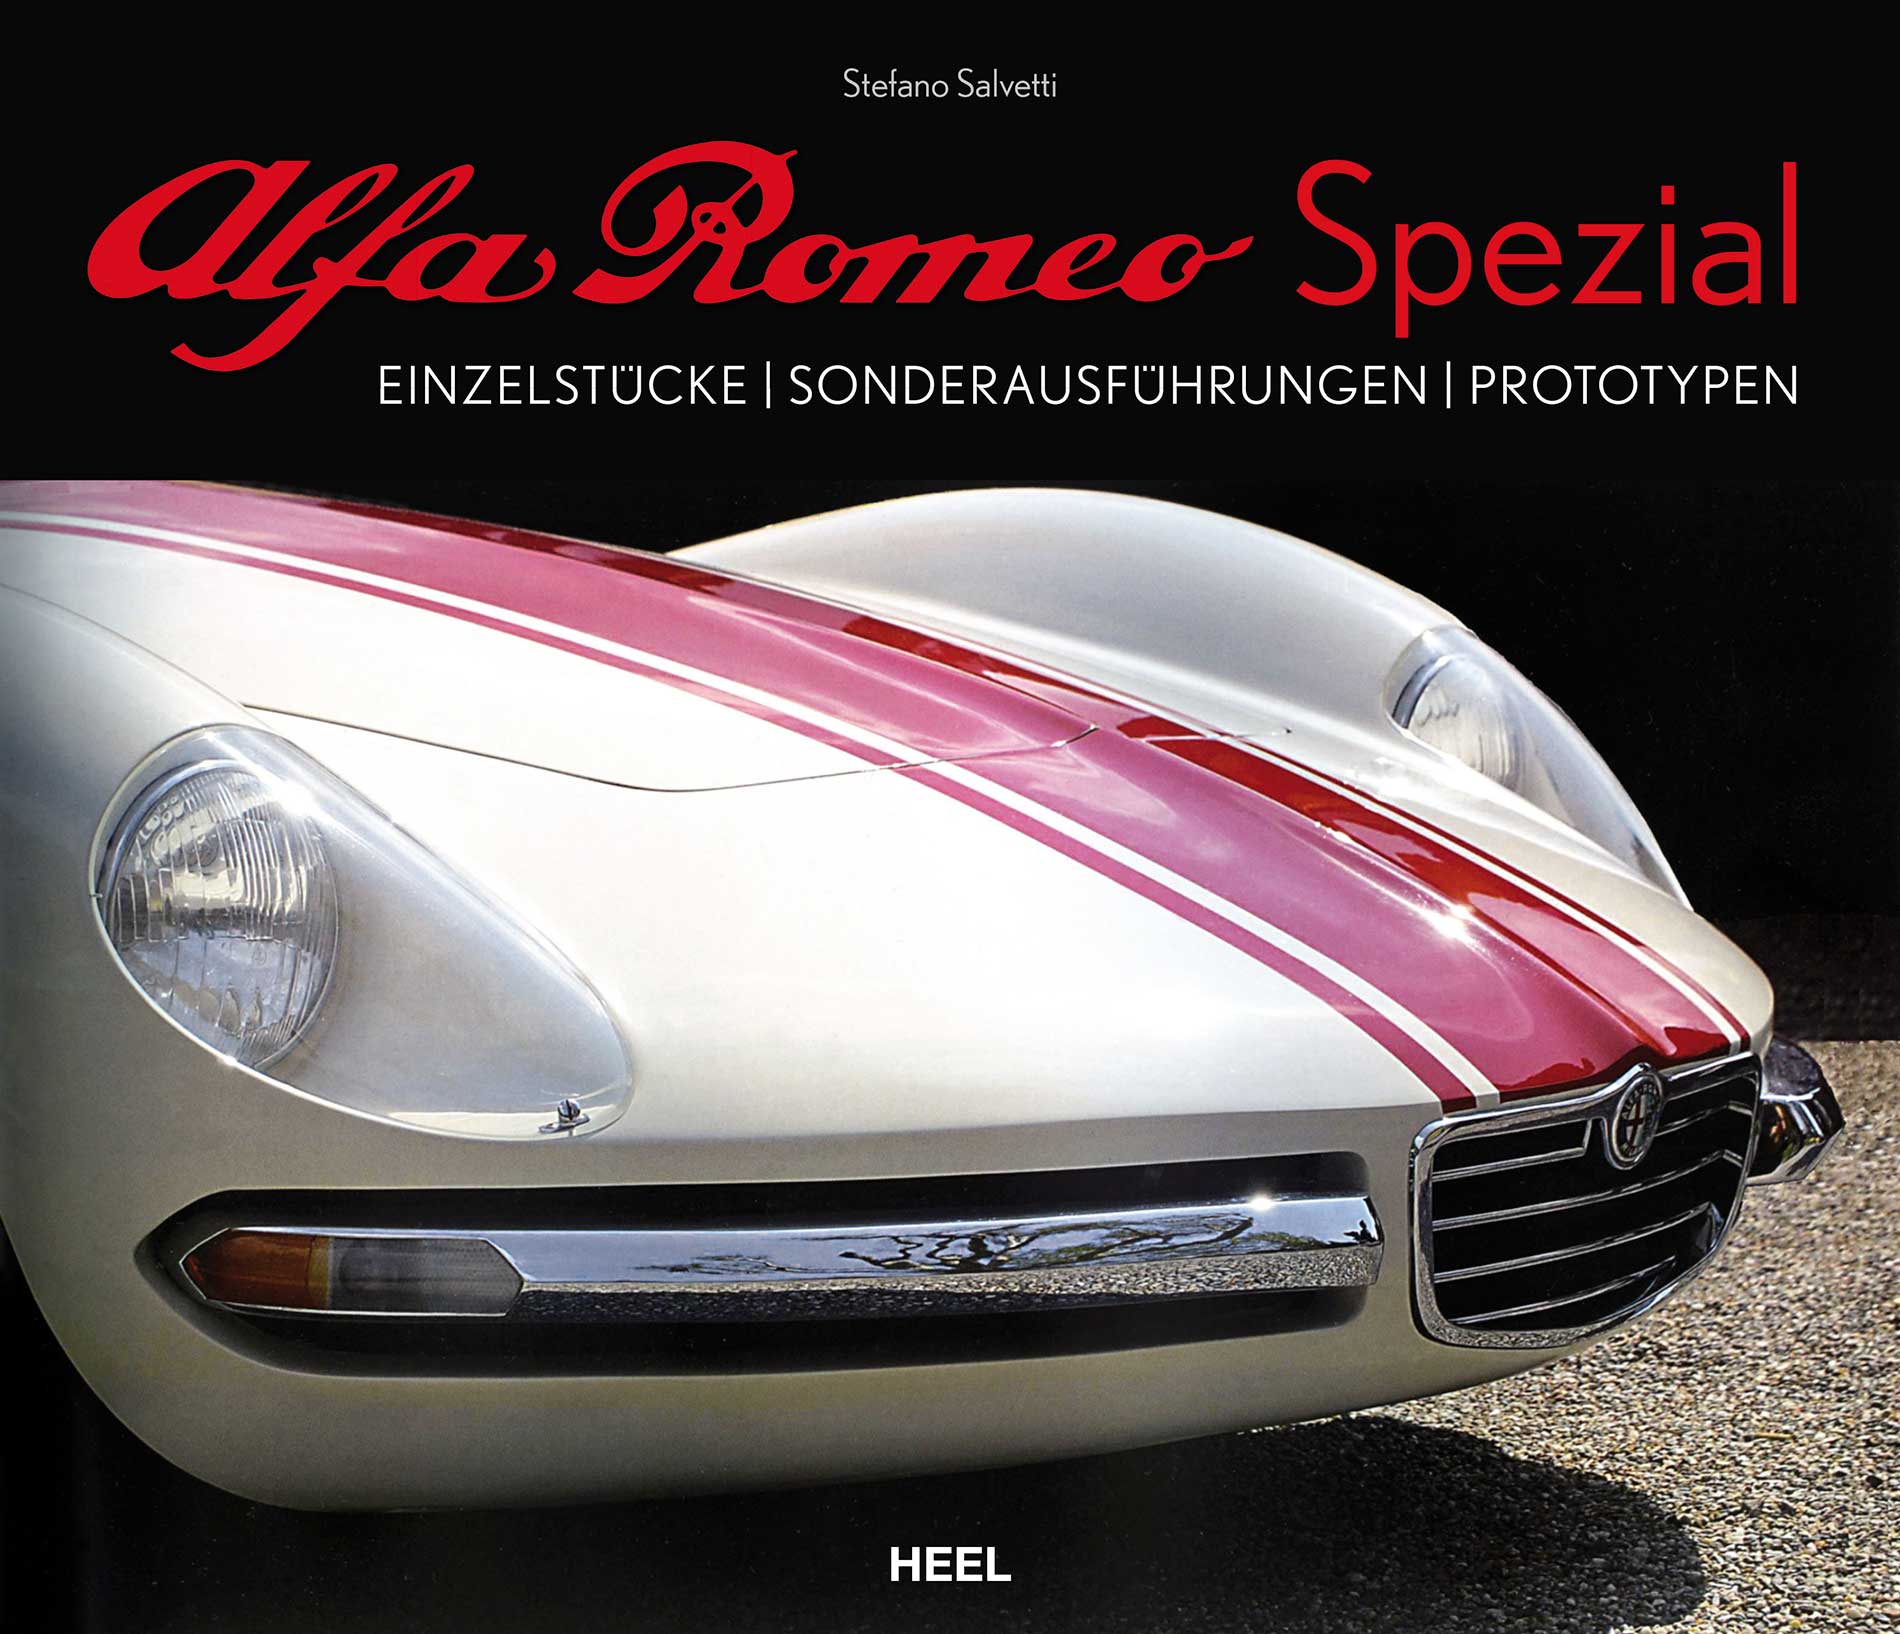 Stefano Salvetti / Alfa Romeo Spezial - Bild 1 von 1